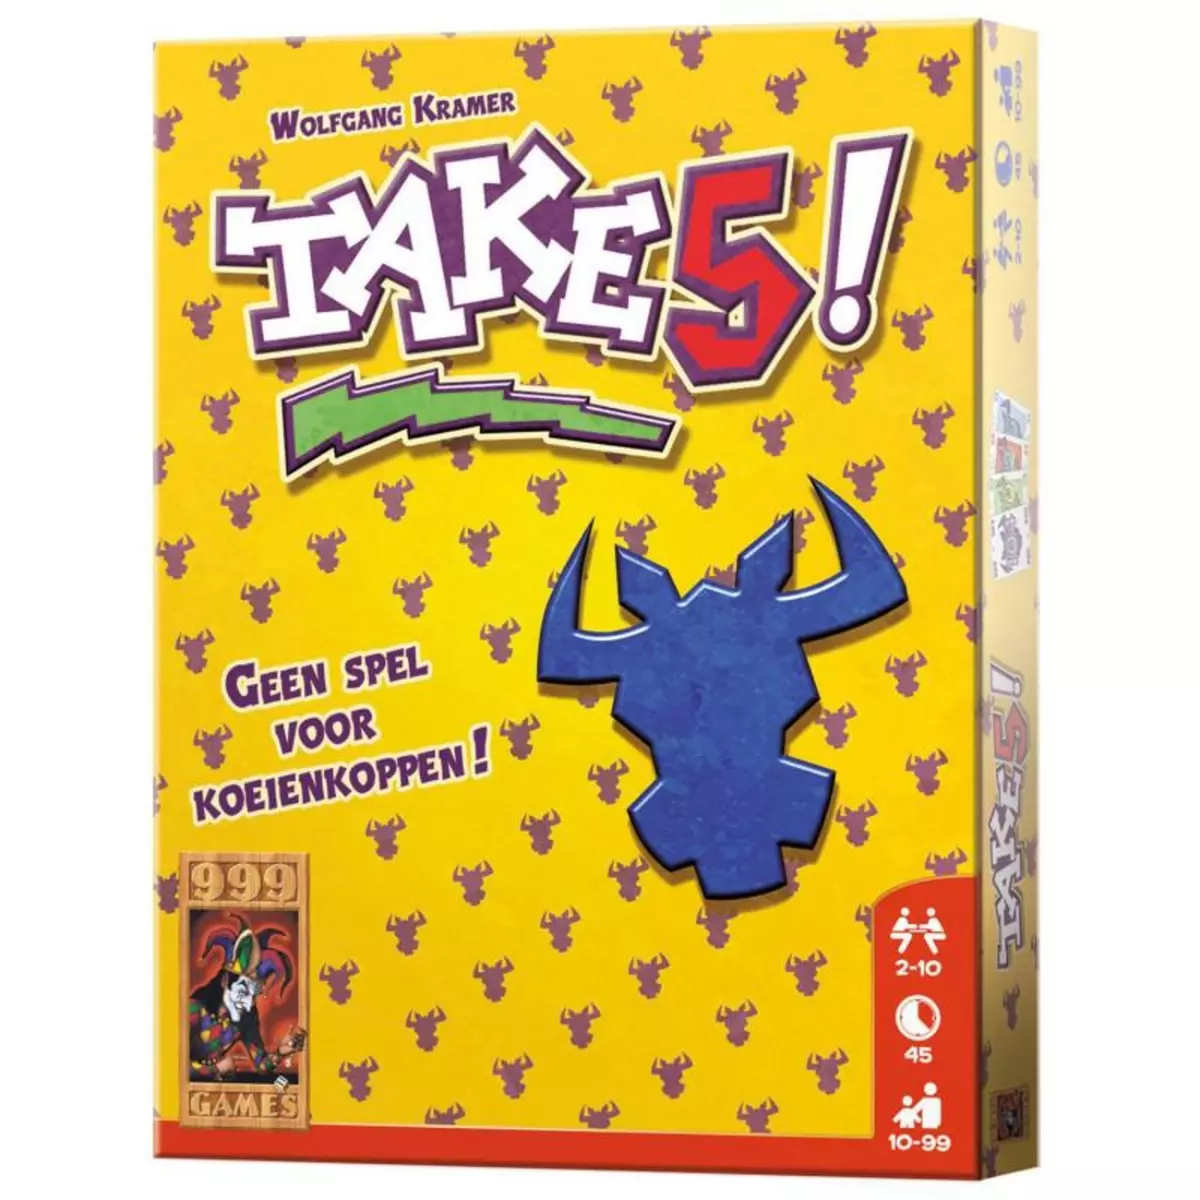 999 GAMES 999GAMES Take 5!